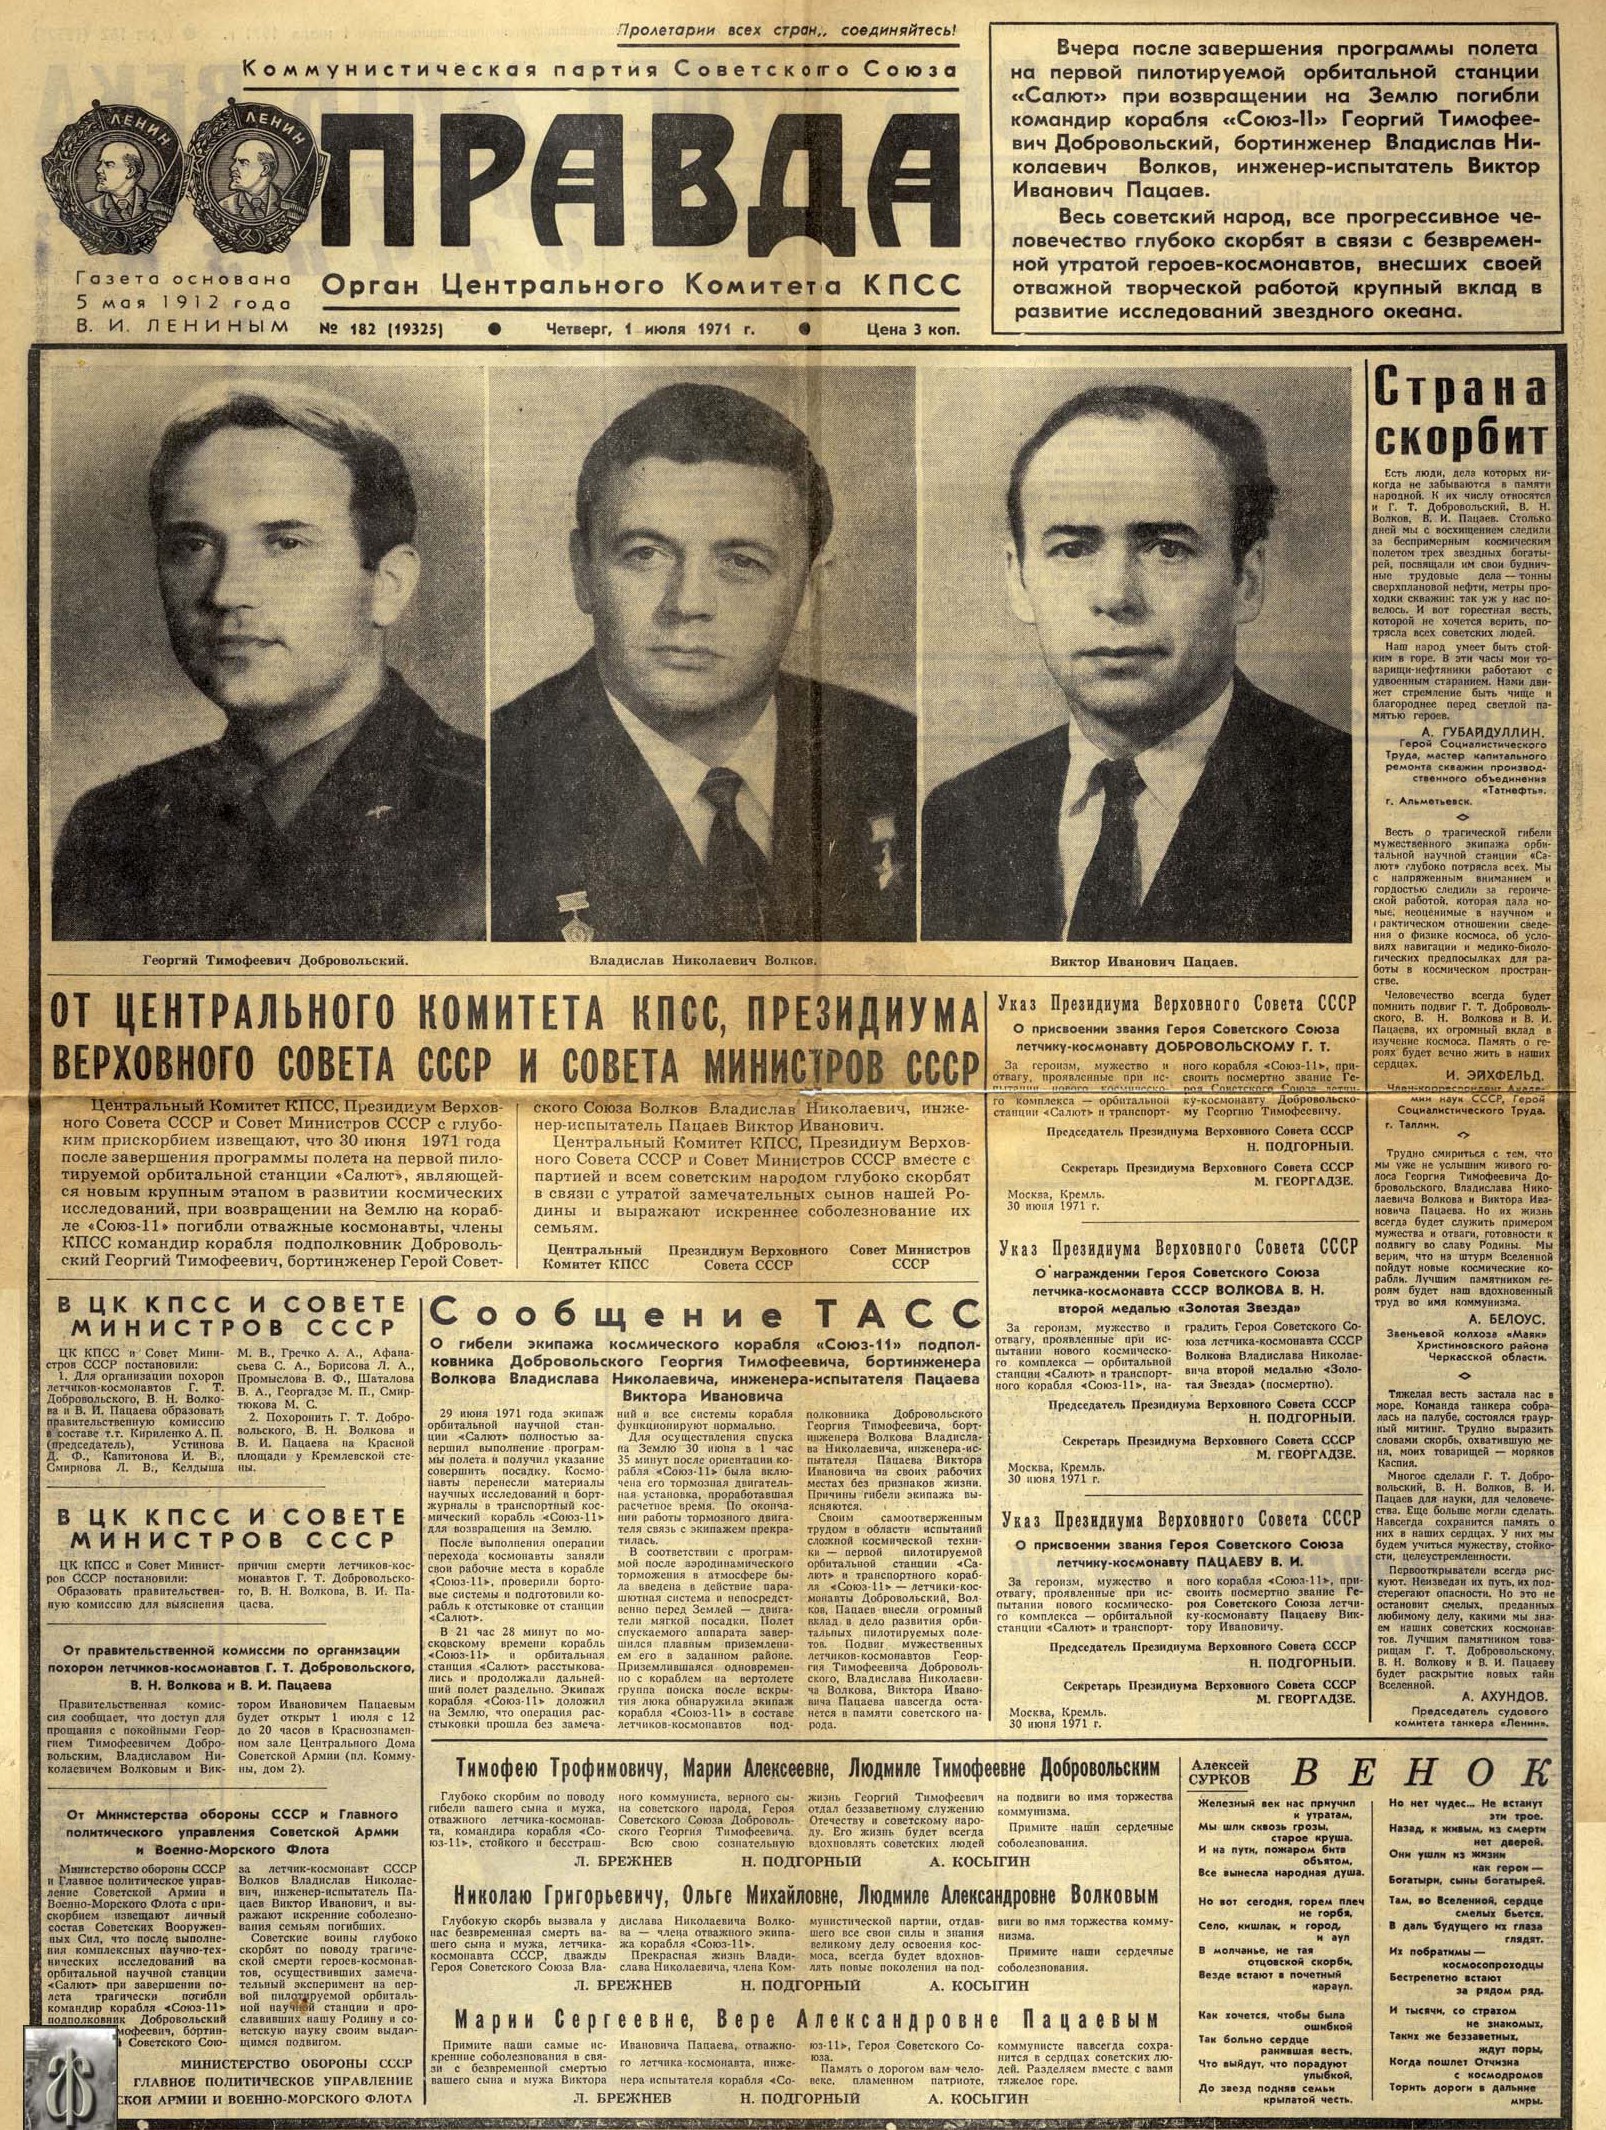 Гибель великих советских космонавтов. Газета "Правда" от 1 июля 1971 года. 